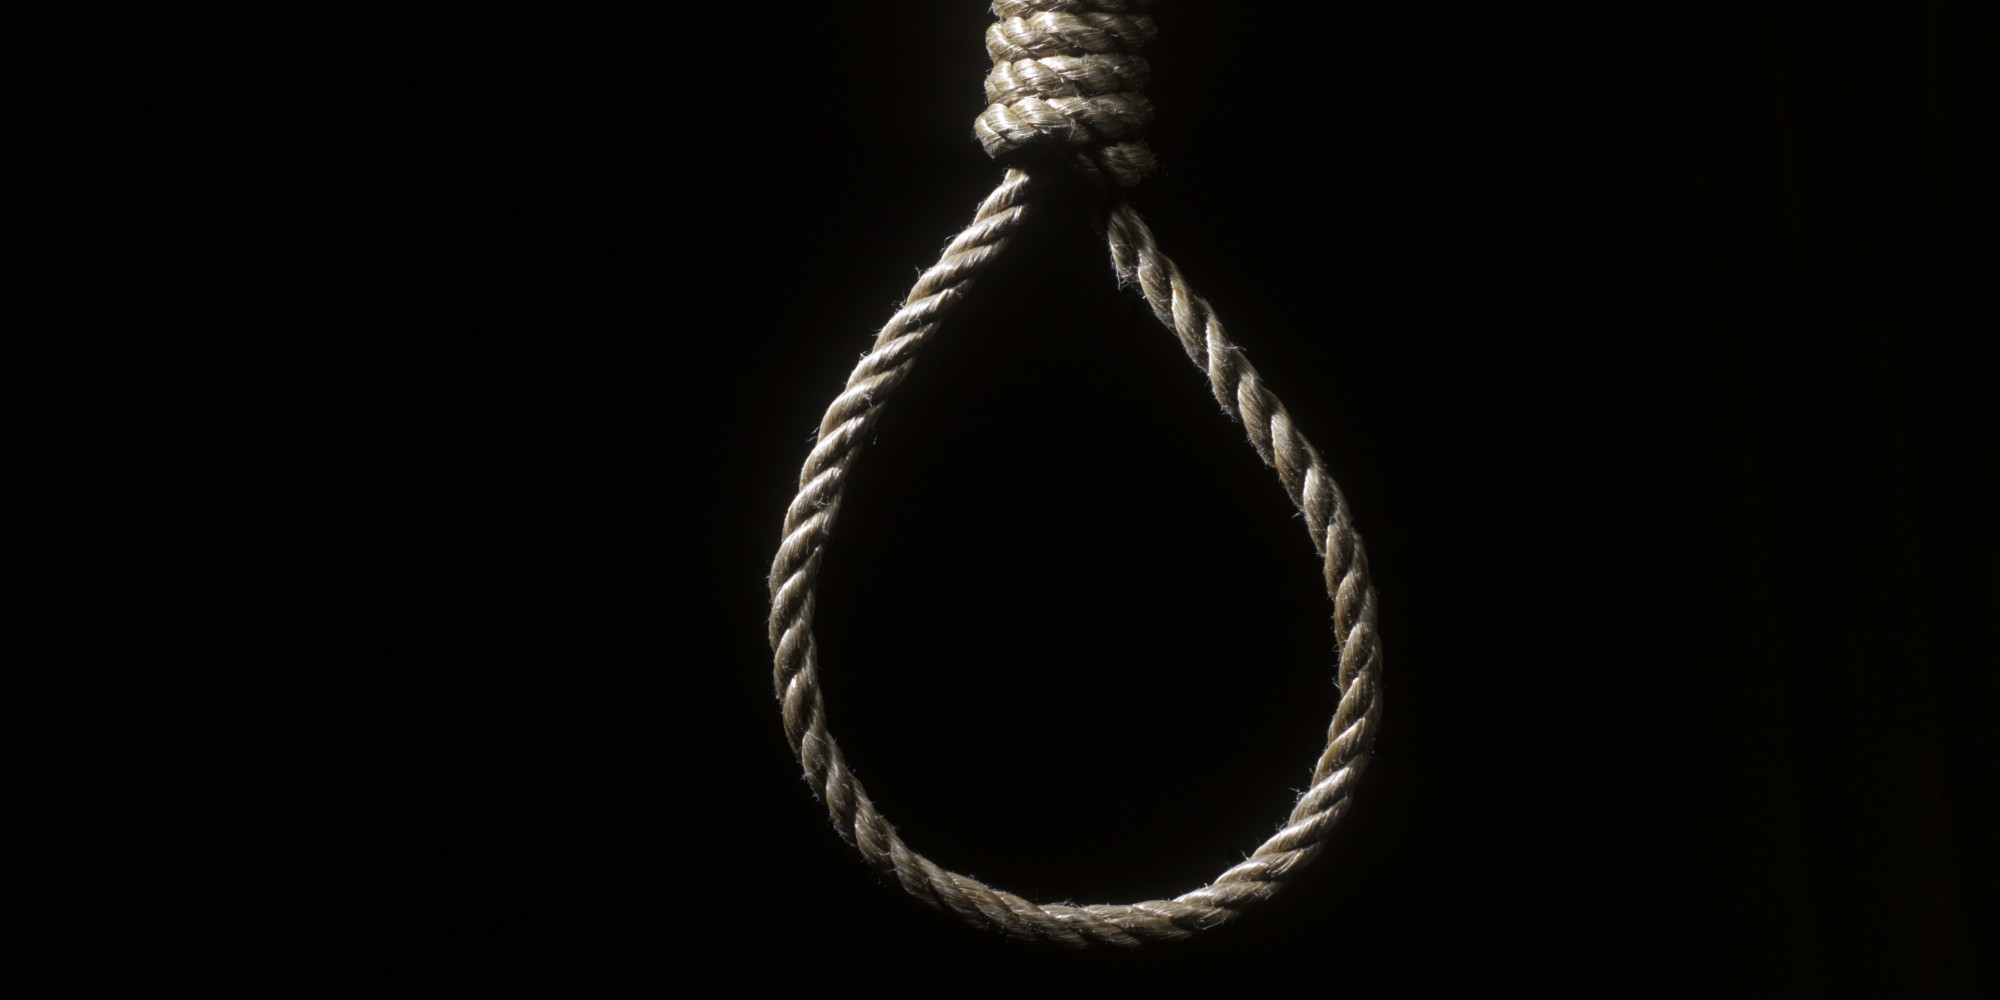 Former AG backs resumption of hangings